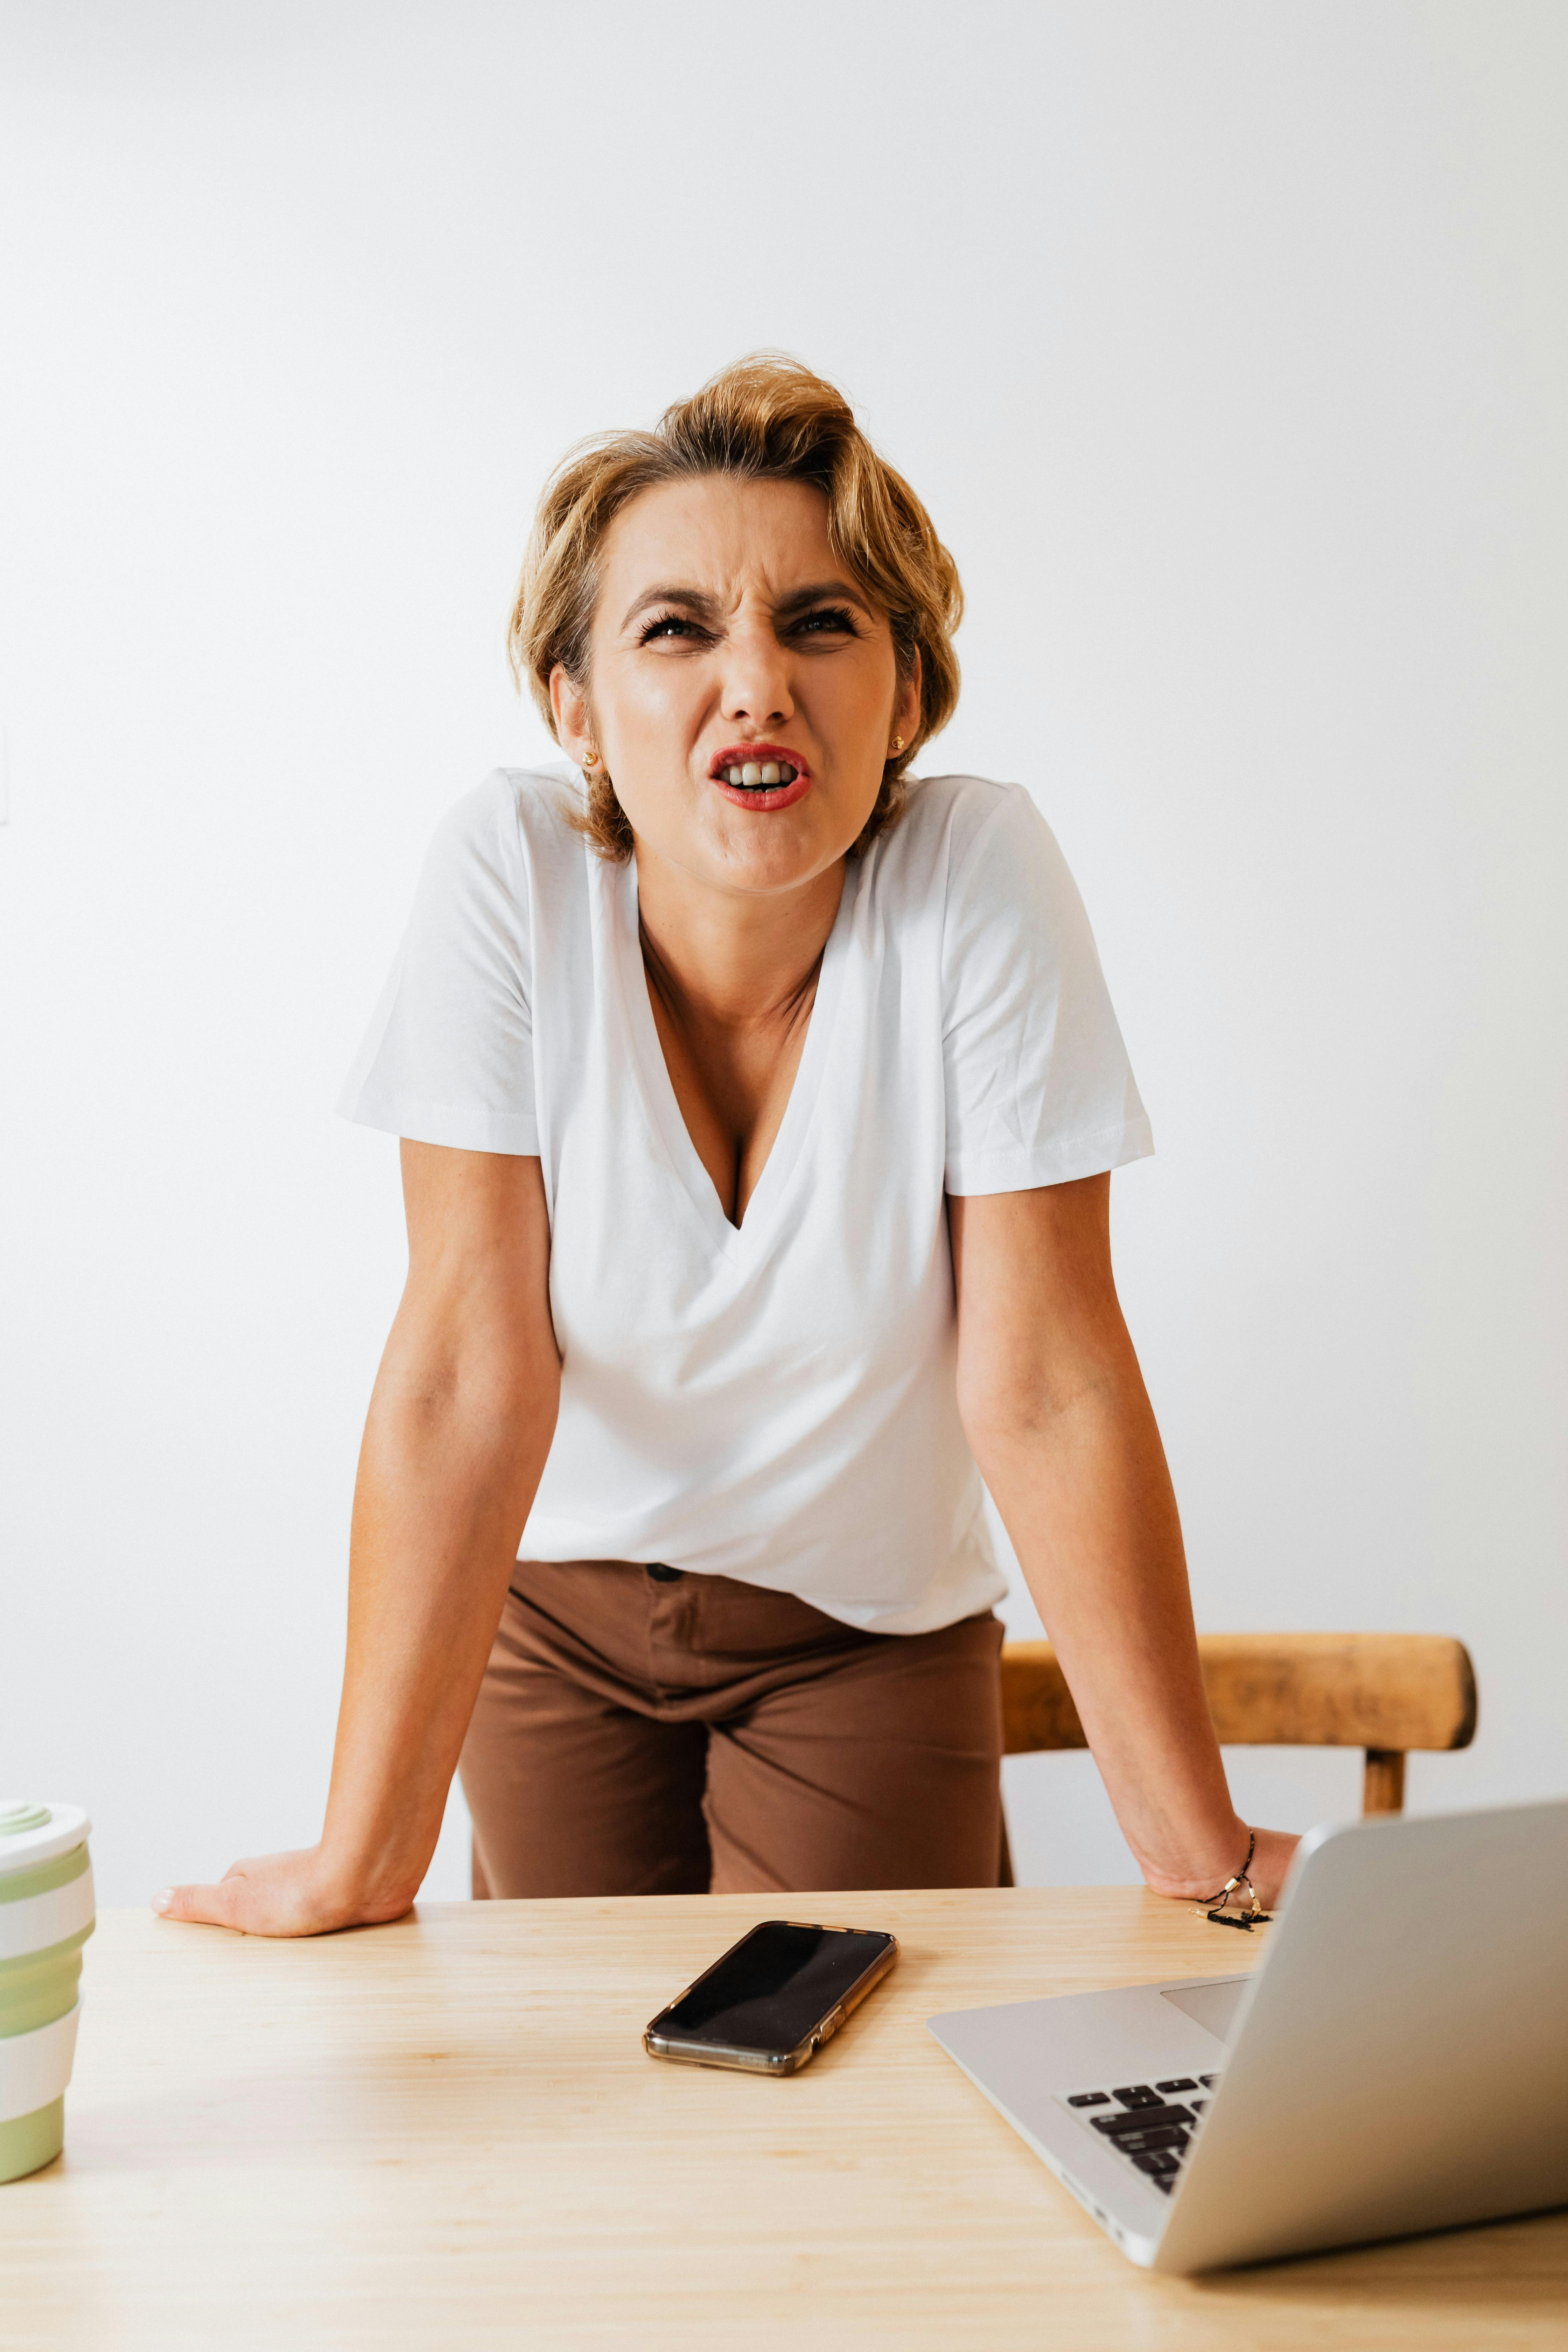 Une femme réagissant avec colère tout en posant ses mains sur une table | Source : Pexels